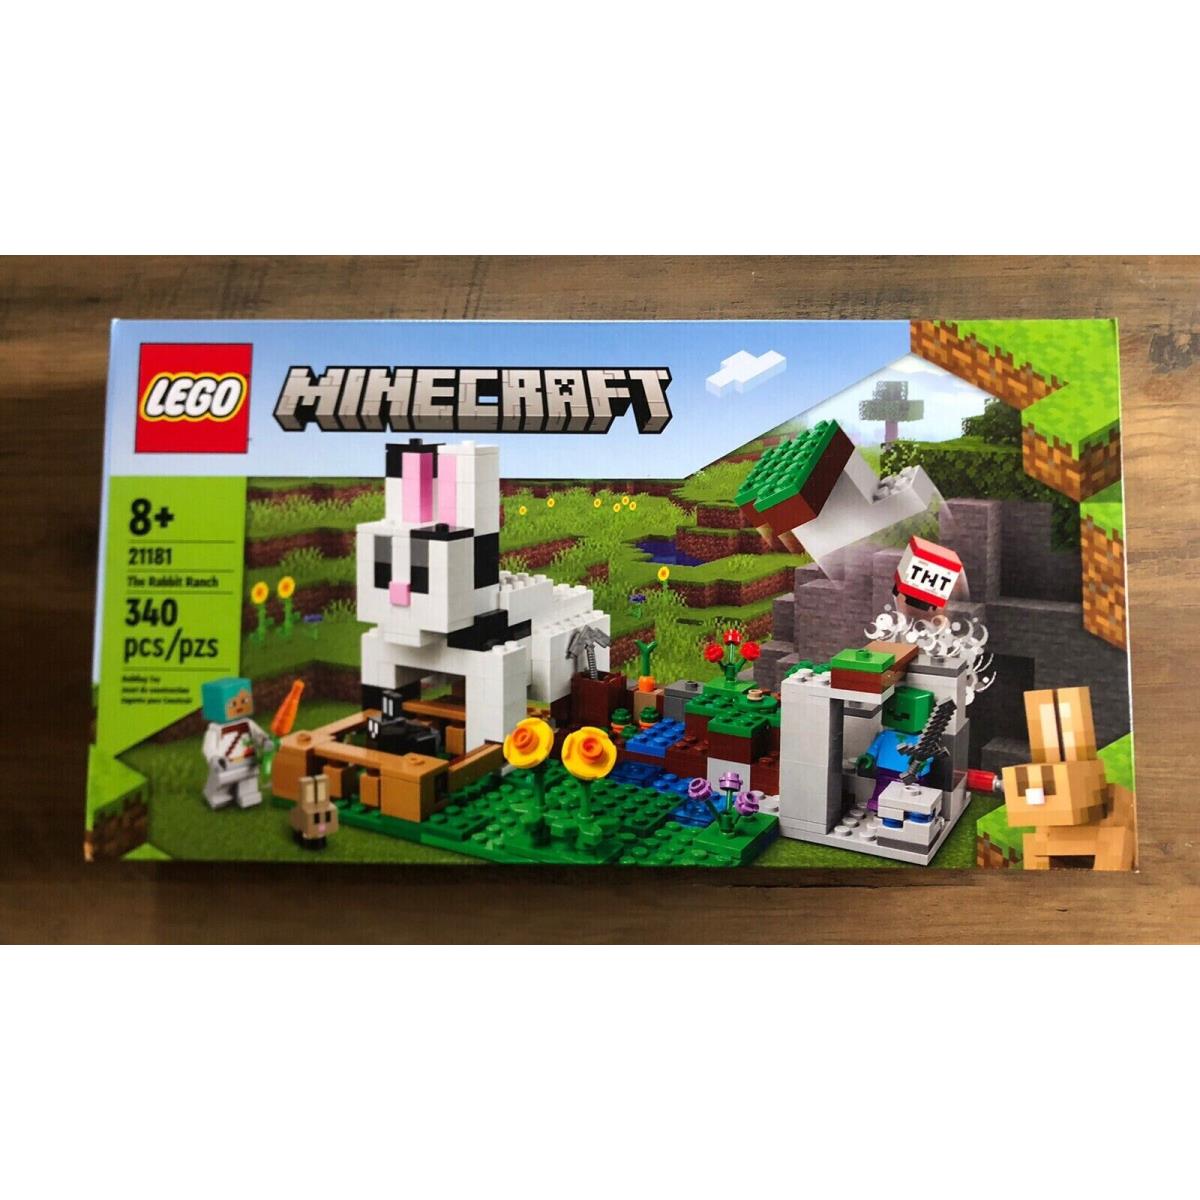 Lego The Rabbit Ranch Minecraft 21181 Building Kit 340 Pcs Playset Set